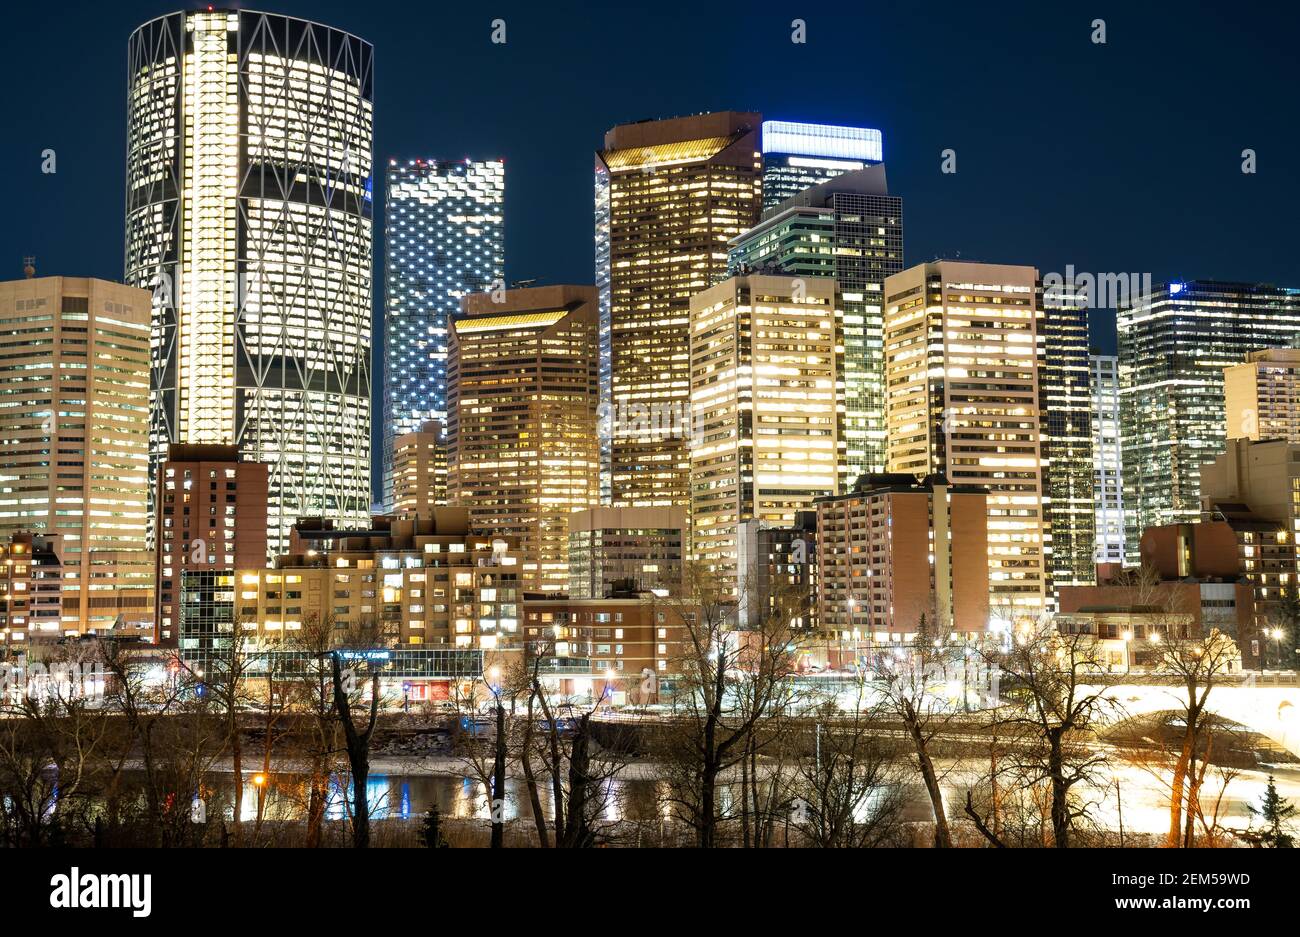 Calgary Alberta Canada, gennaio 30 2021: Una lunga esposizione fotografia di notte dei punti di riferimento del centro di una città canadese Foto Stock